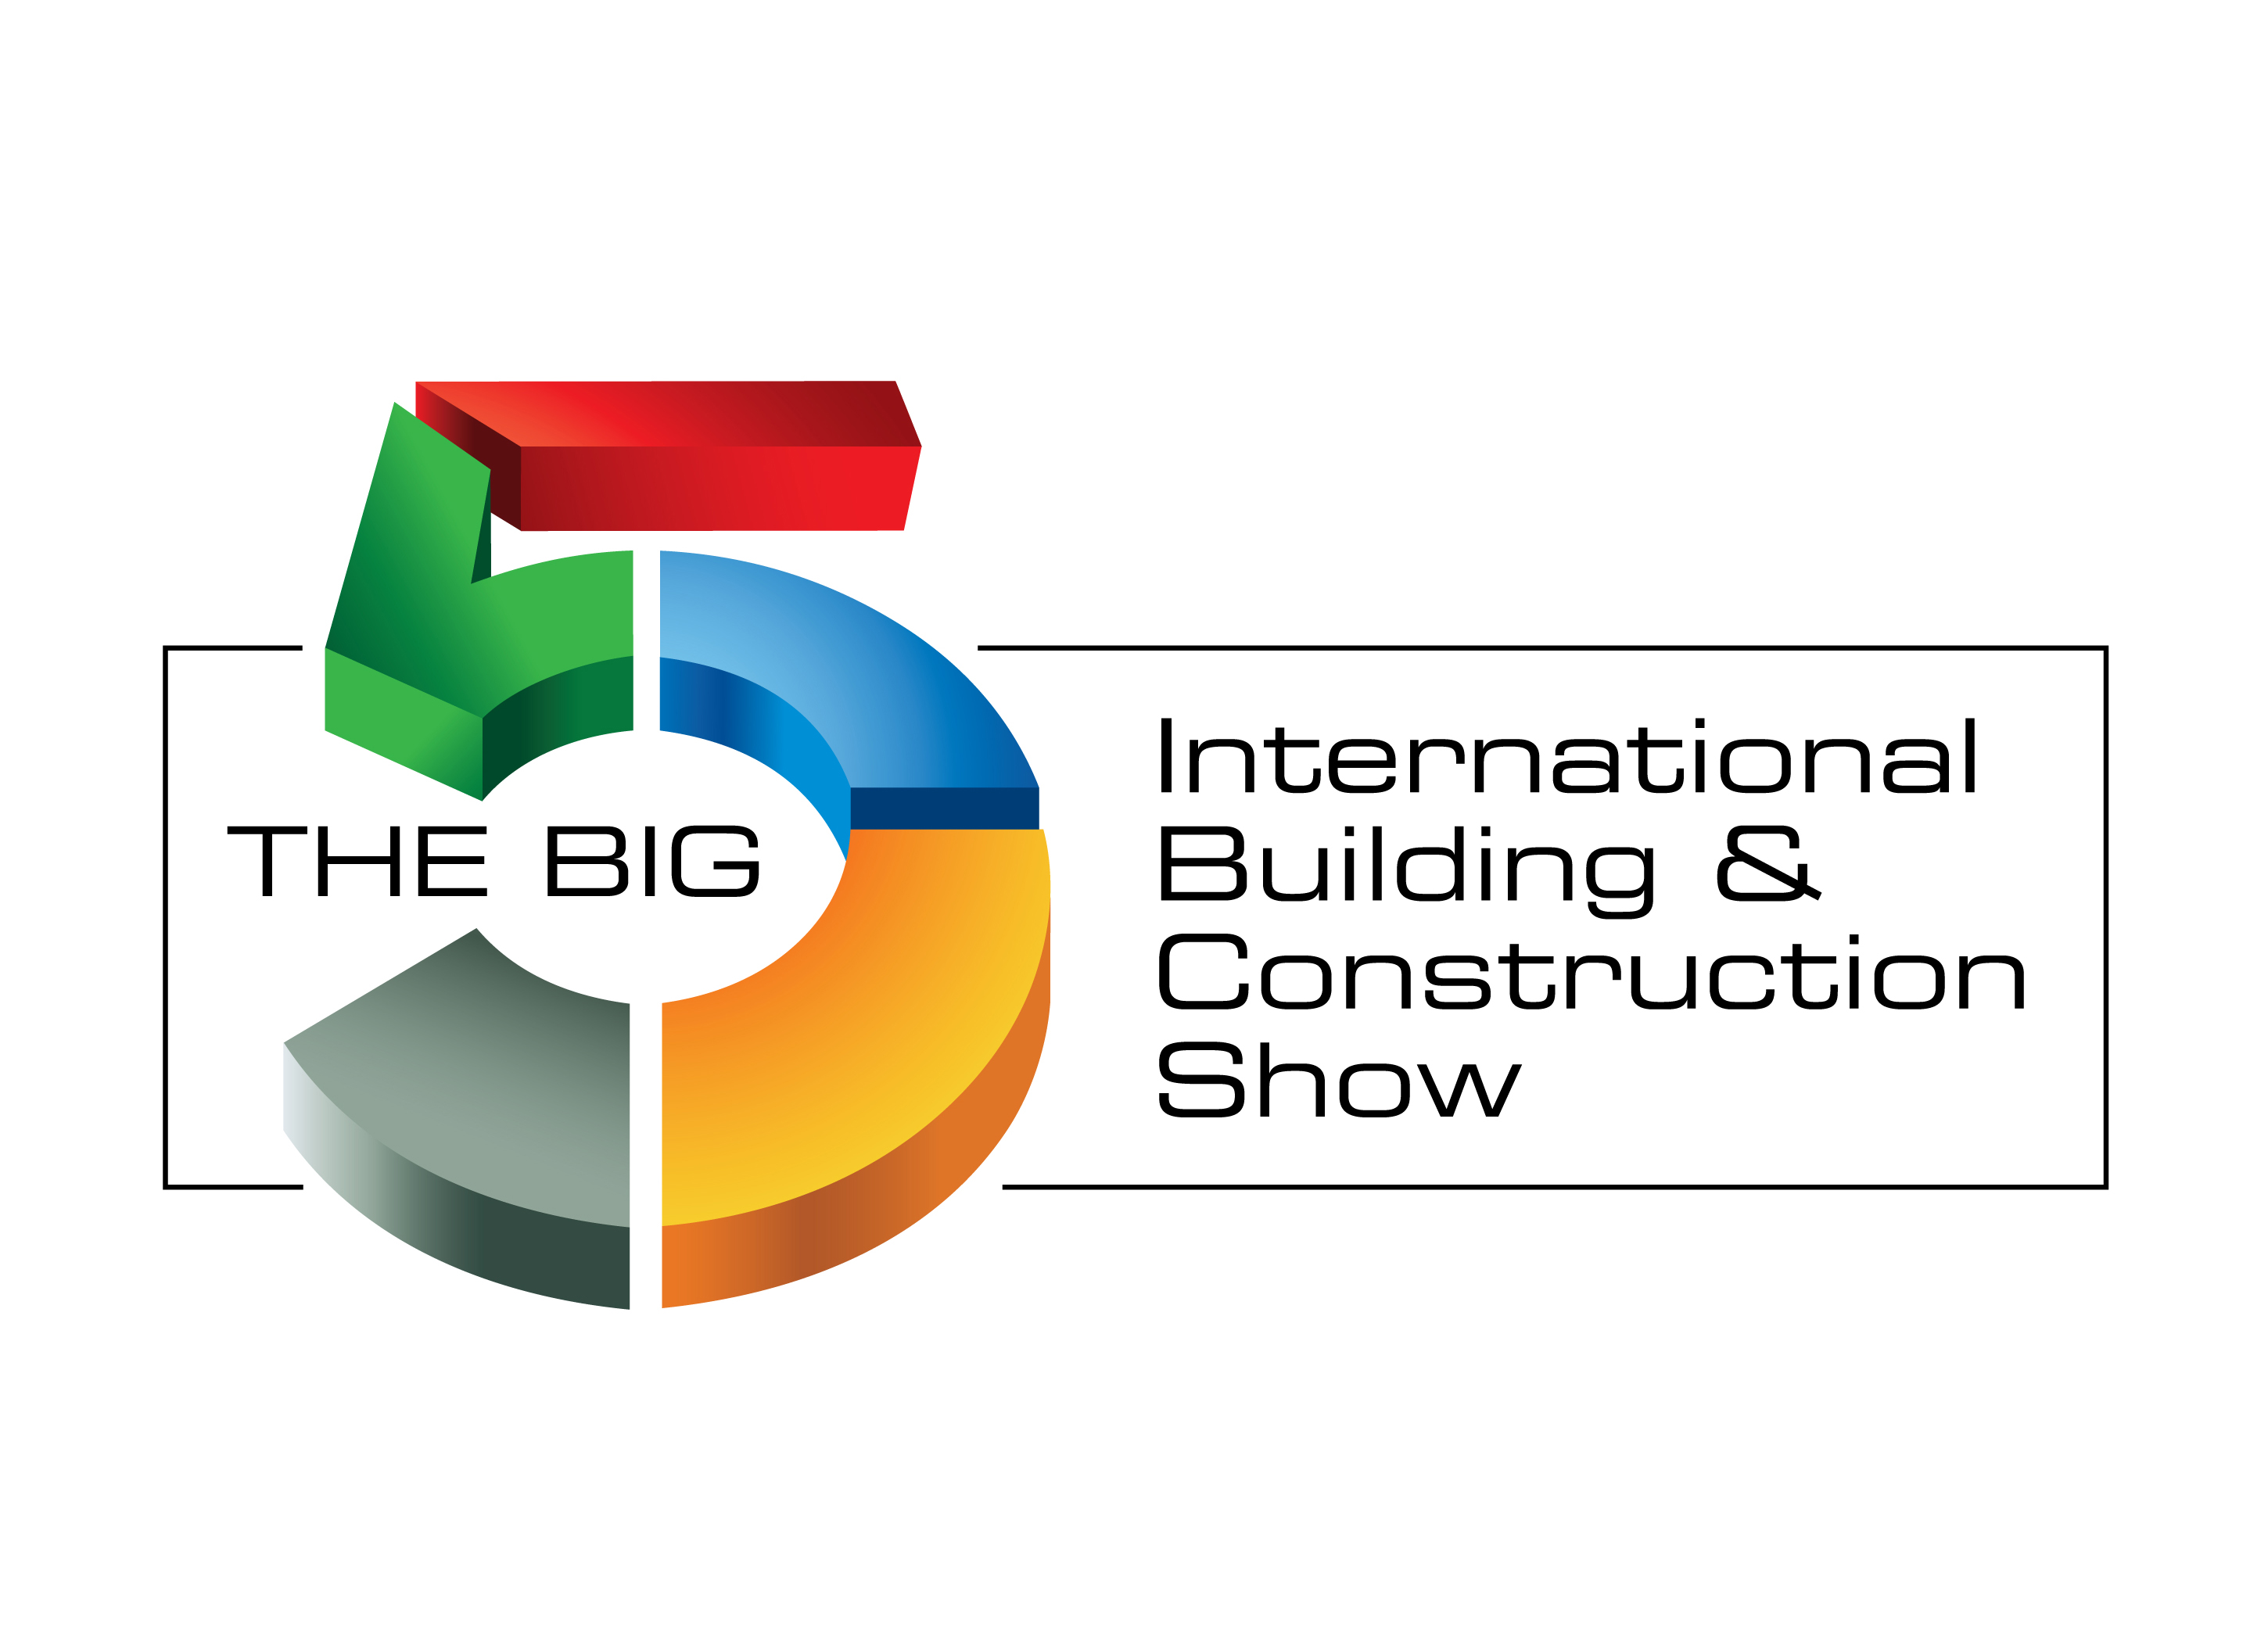 The Big 5 Dubai Construction Show